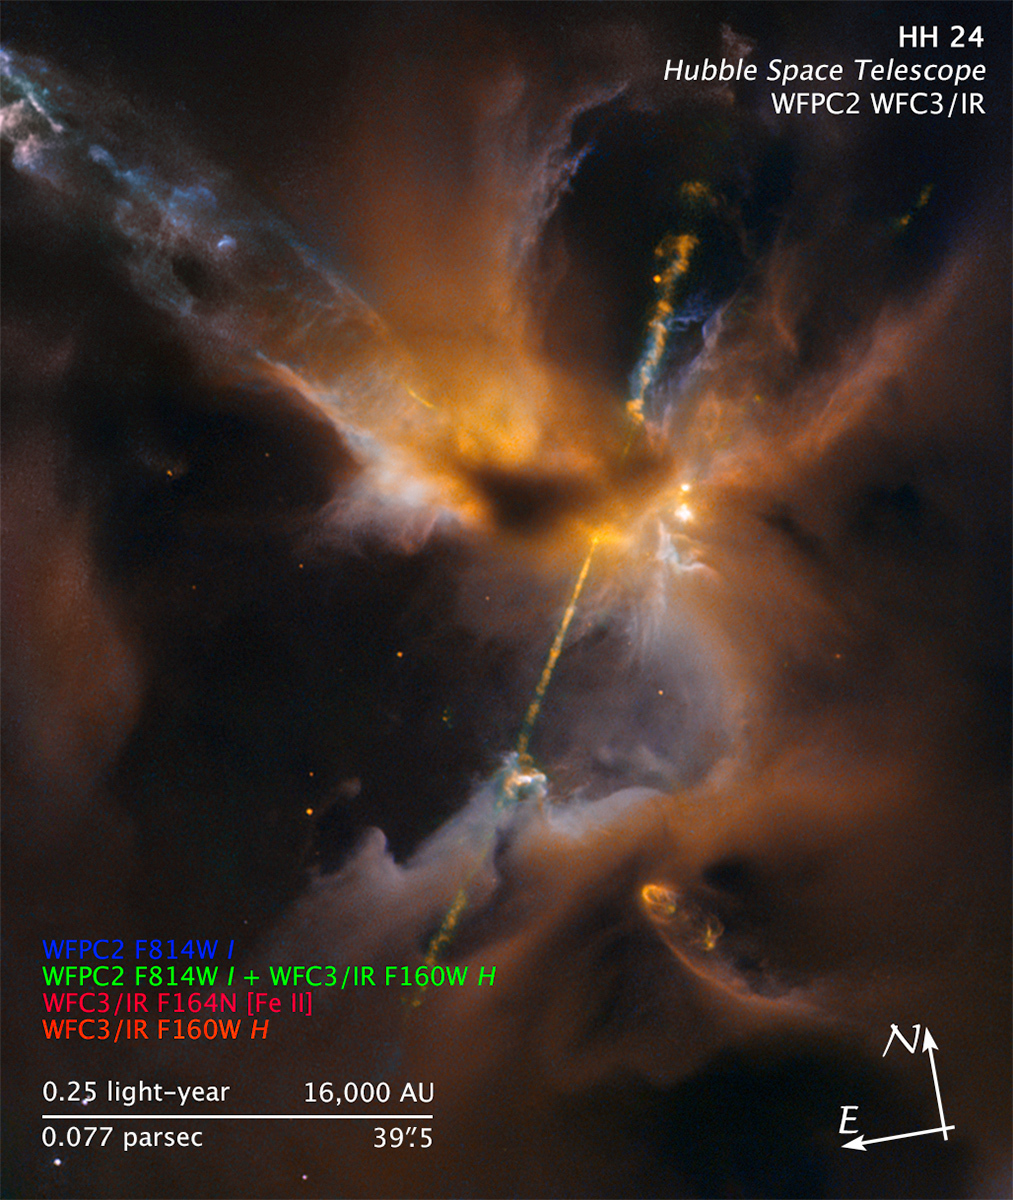 Obraz obiektu Herbiga-Haro 24 (HH 24) wykonany przez Kosmiczny Teleskop Hubble’a za pomocą instrumentów WFPC2 i WFC3/IR w pięciu barwach. HH 24 znajduje się w odległości ~1350 l.św. w obłoku molekularnym Orion B. Częściowo przesłonięta przez zimny gaz i pył młoda gwiazda w centrum obrazu wyrzuca parę dżetów w obłok gazowo-pyłowy, generując fale uderzeniowe, które rozświetlają fragmenty mgławicy. Ten rozświetlony przez fale uderzeniowe obszar zbiorczo został nazwany obiektem Herbiga-Haro 24. Źródło: NASA/ESA/STScI